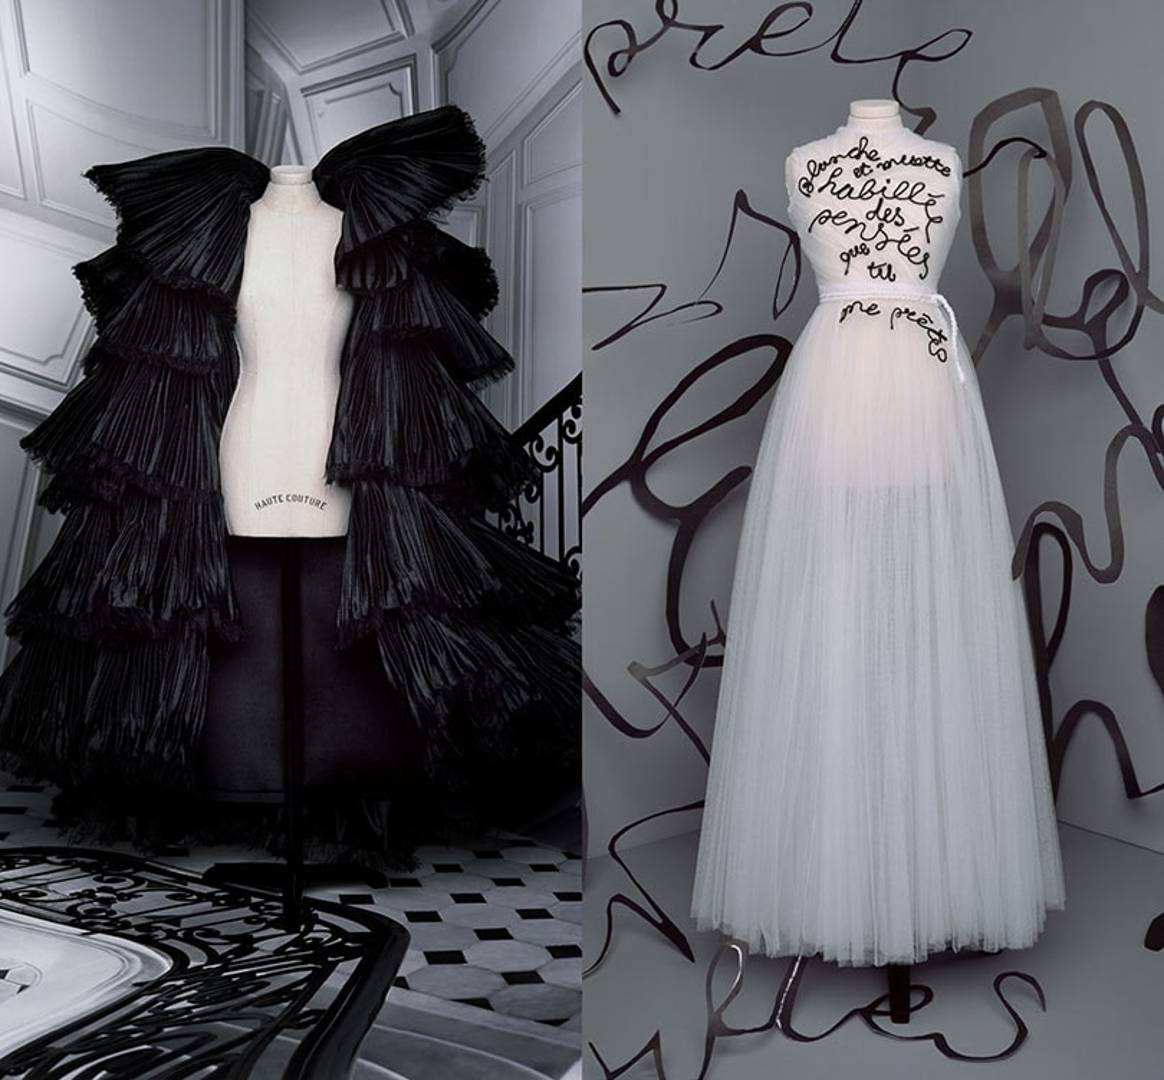 Fashion Week : Dior signe une haute couture fantasmagorique